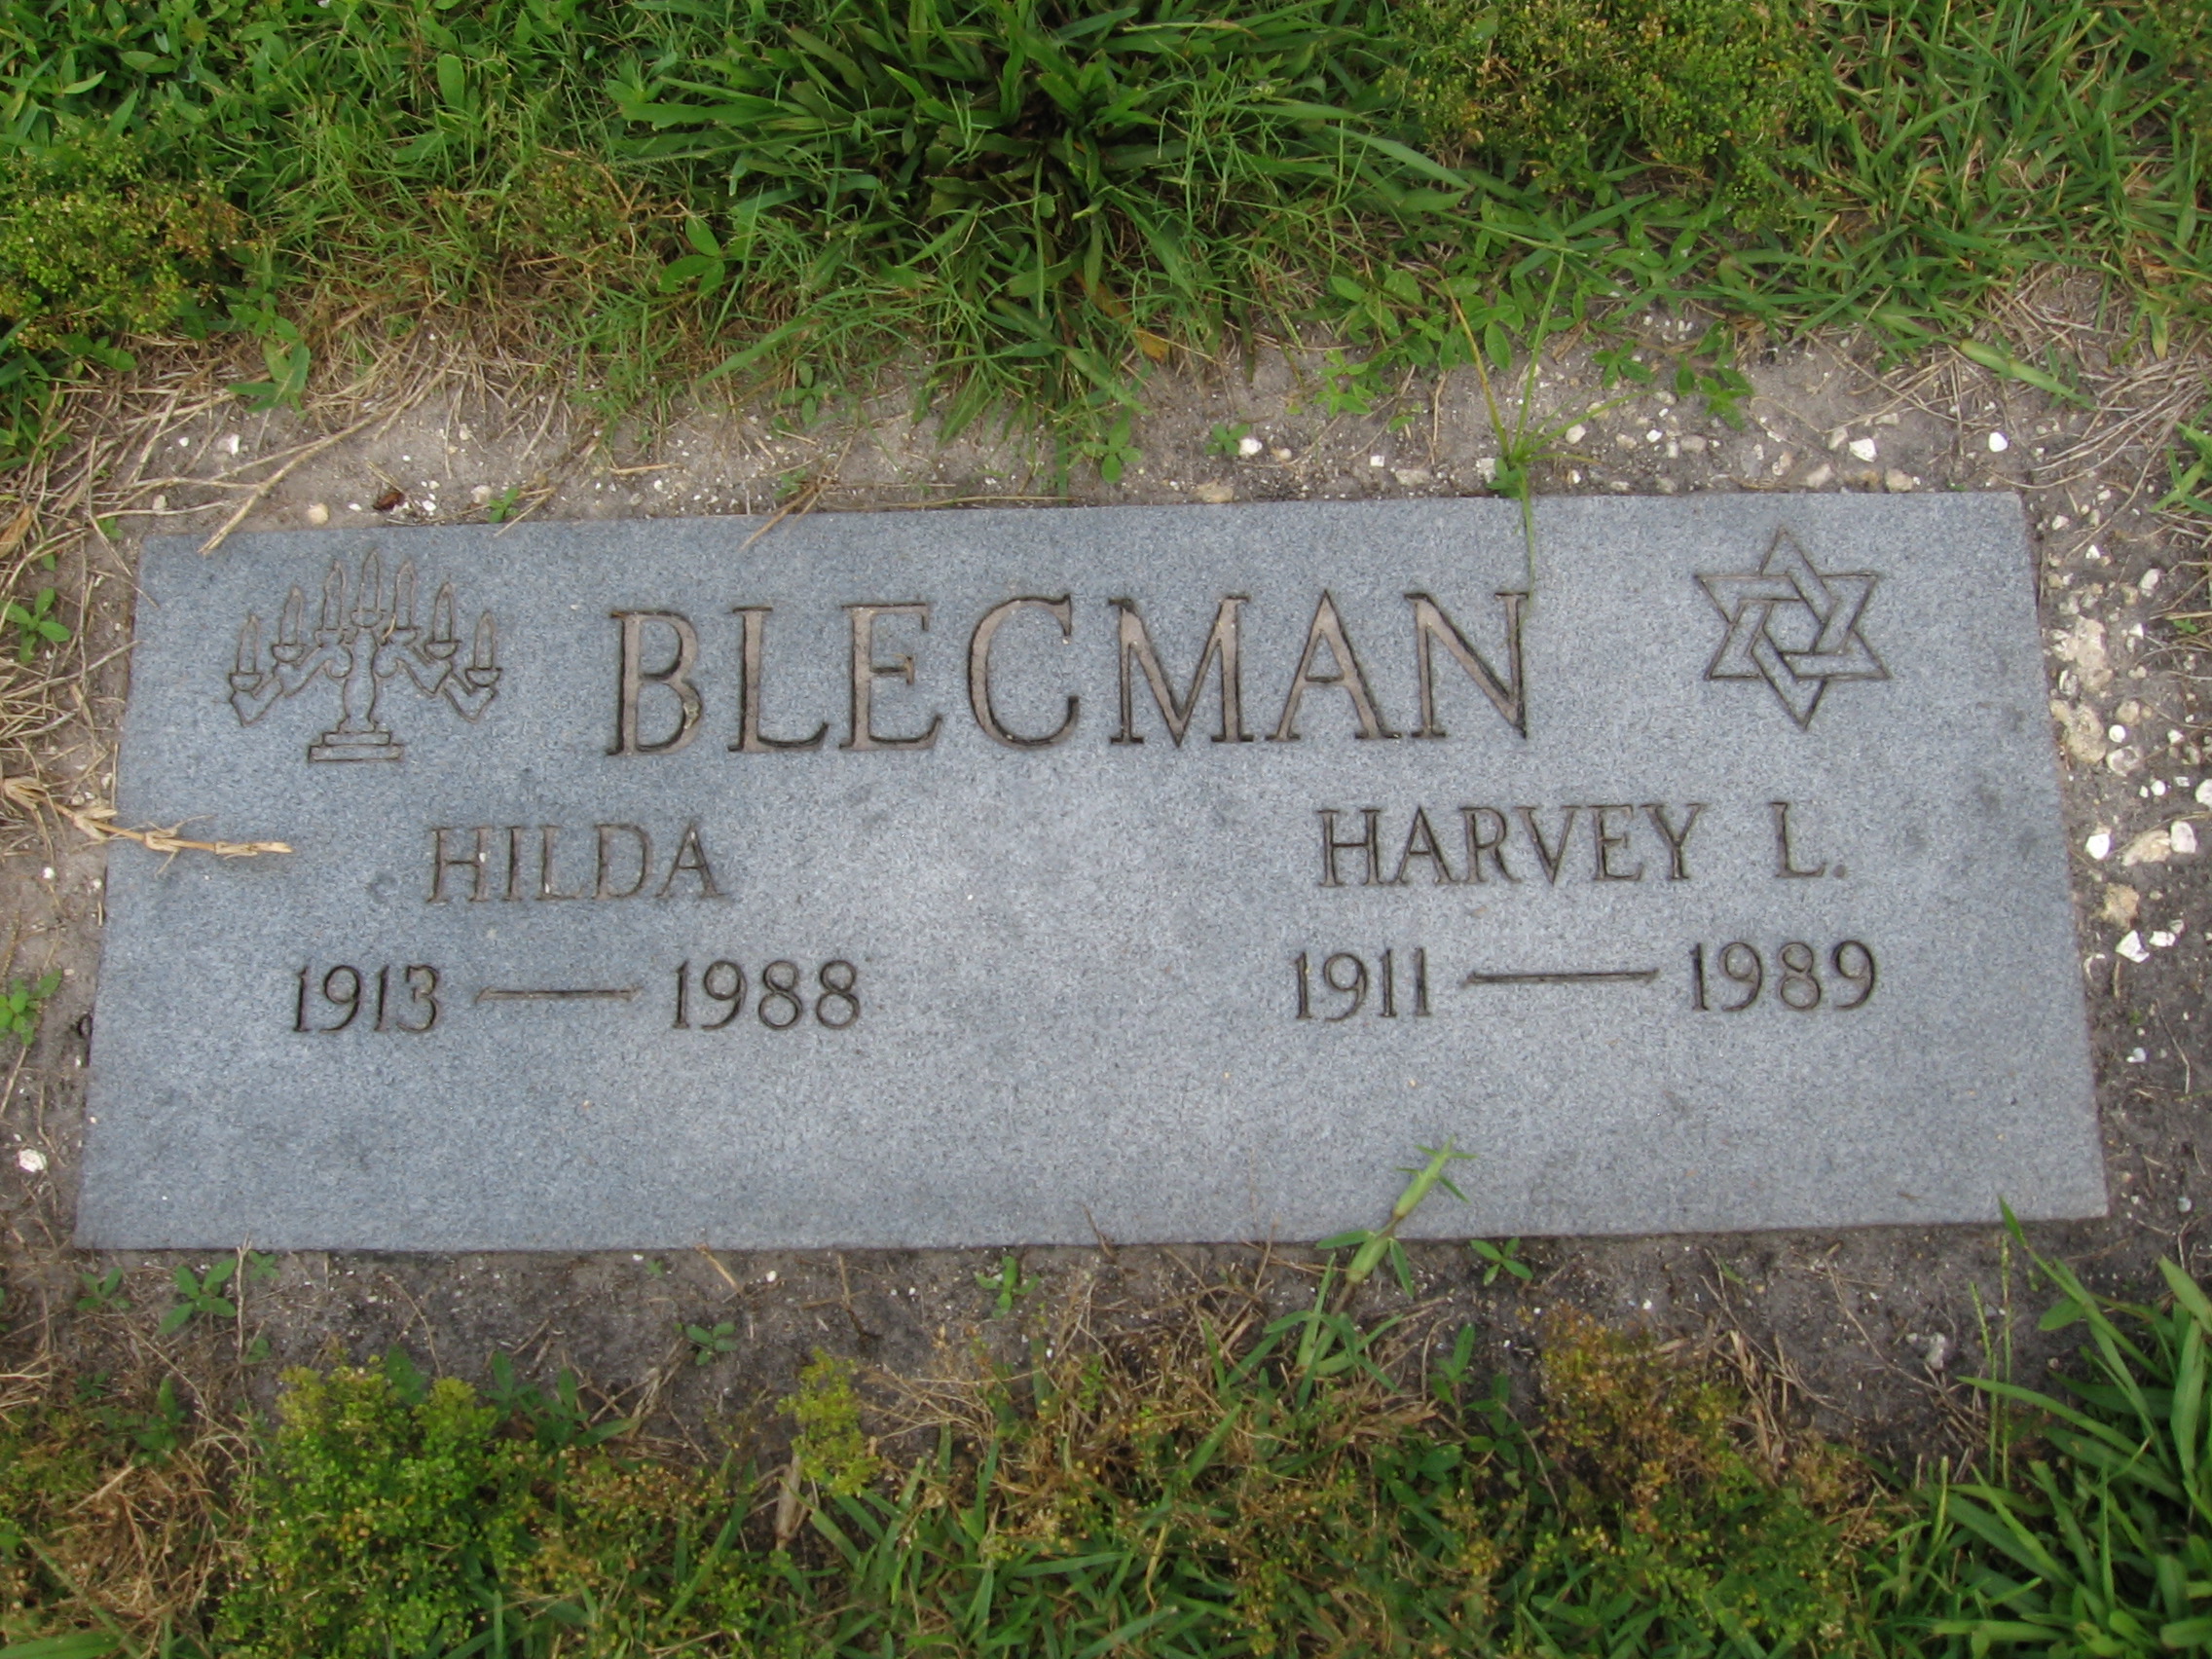 Harvey L Blecman